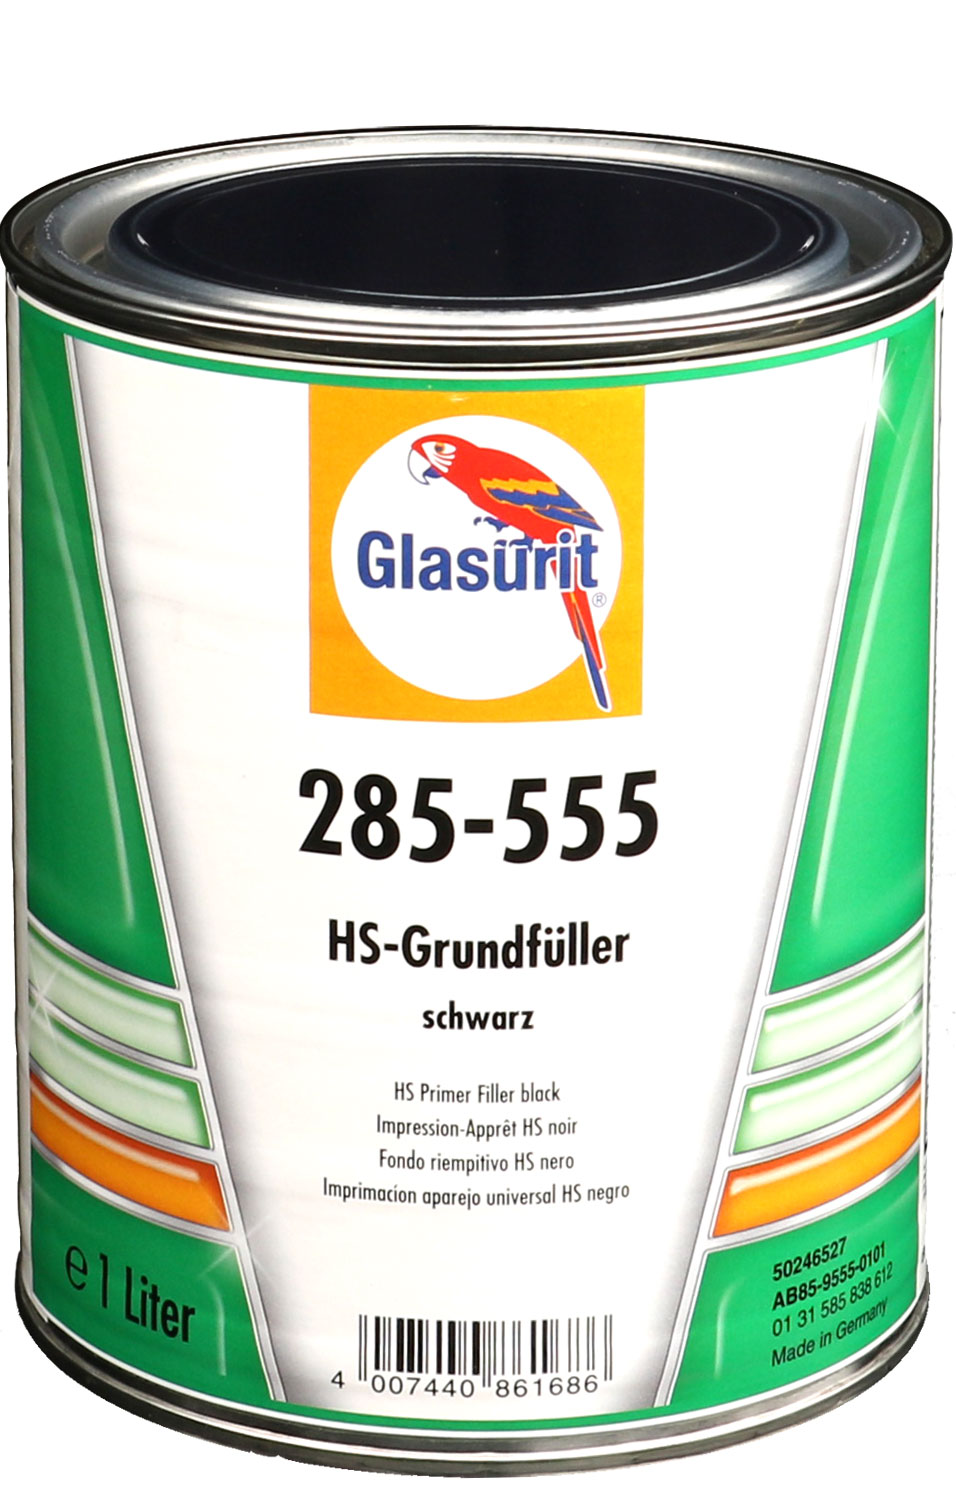 Glasurit HS-Grundierfüller 285-555 schwarz